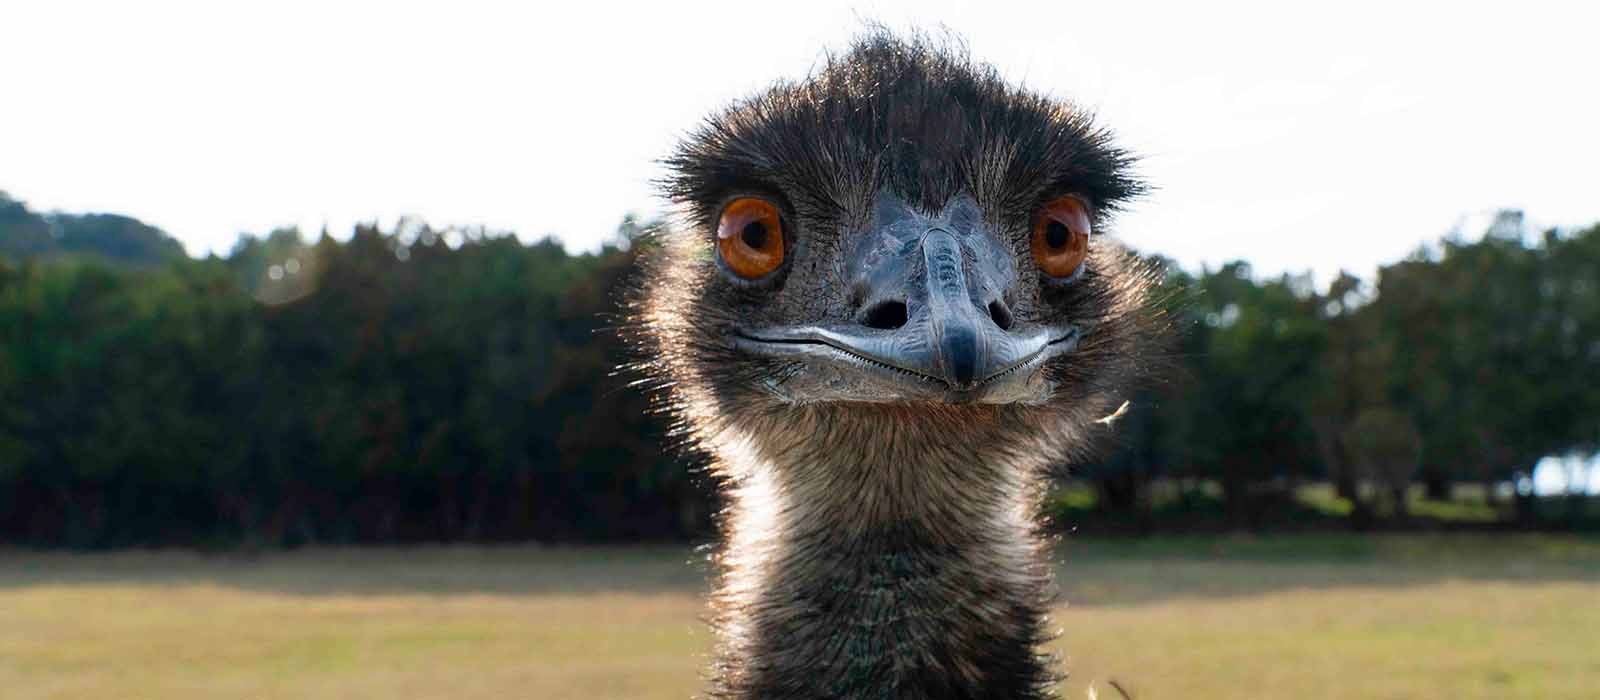 emu bird